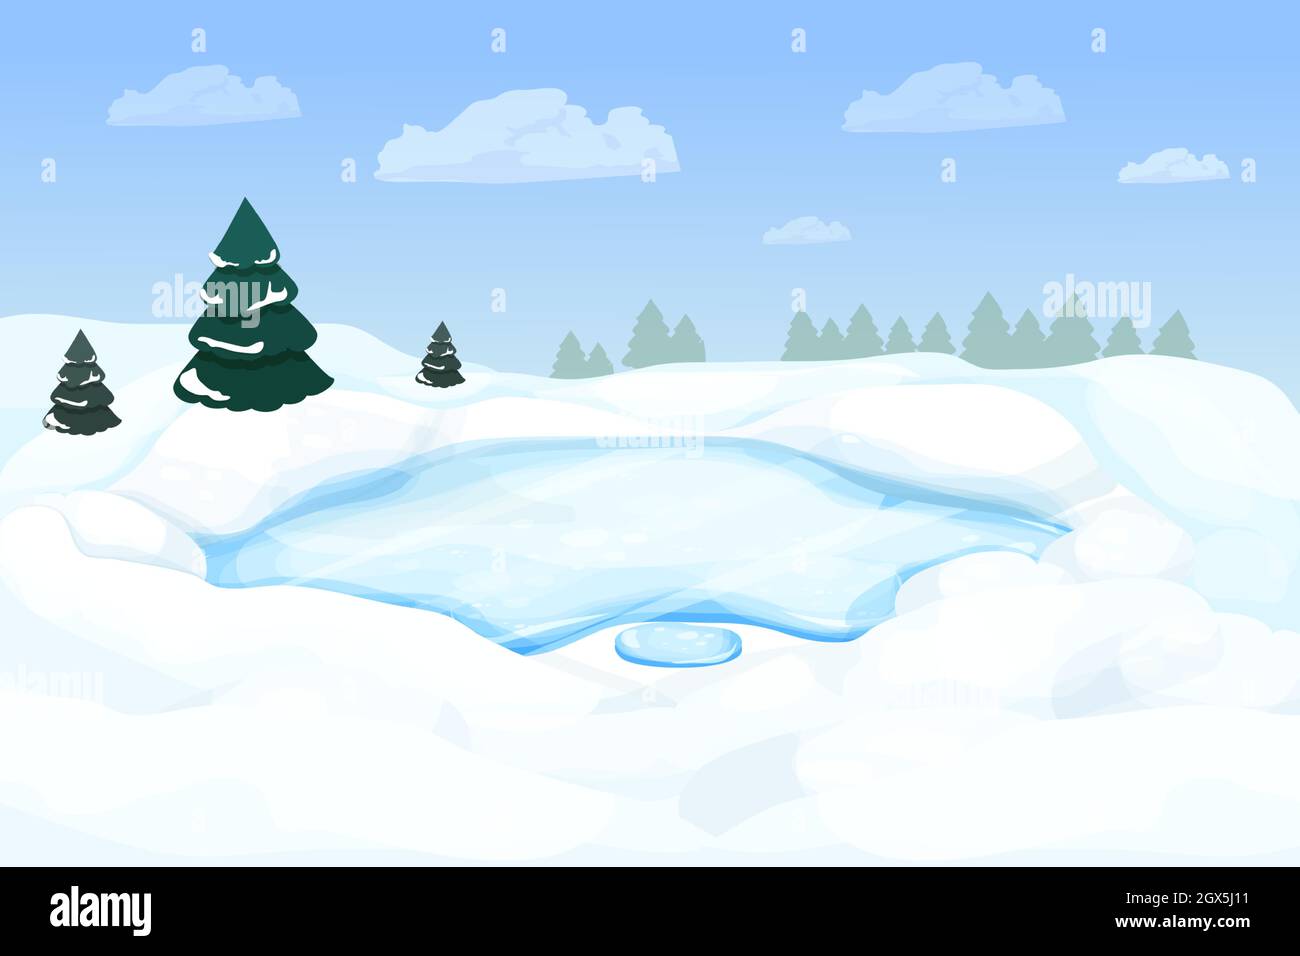 Paysage d'hiver avec lac gelé, rivière en forêt avec neige et pins dans le style de dessin animé. Scène enneigée. L'hiver, nature sauvage et sauvage. Illustration de Vecteur